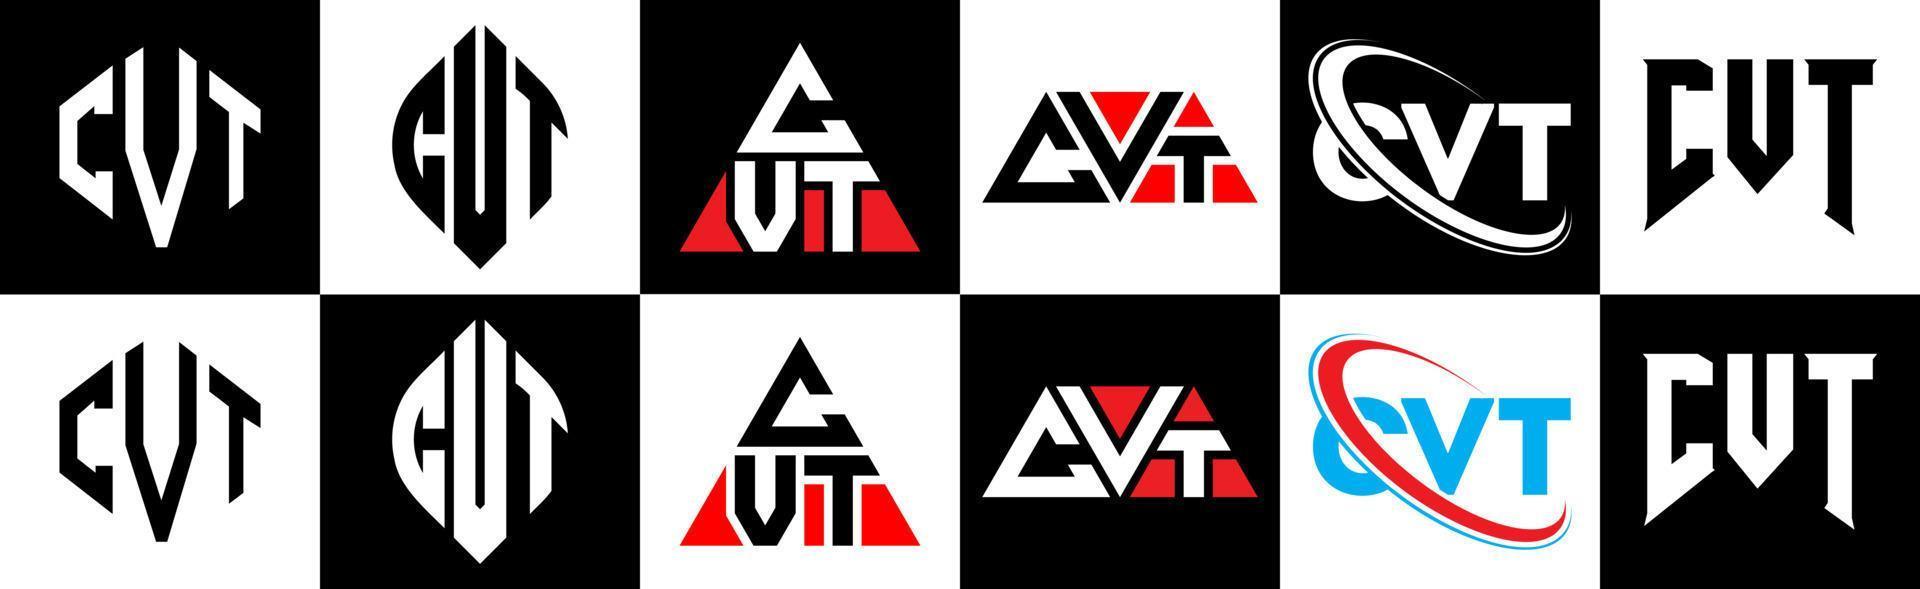 cvt-Buchstaben-Logo-Design in sechs Stilen. cvt Polygon, Kreis, Dreieck, Sechseck, flacher und einfacher Stil mit schwarz-weißem Buchstabenlogo in einer Zeichenfläche. cvt minimalistisches und klassisches Logo vektor